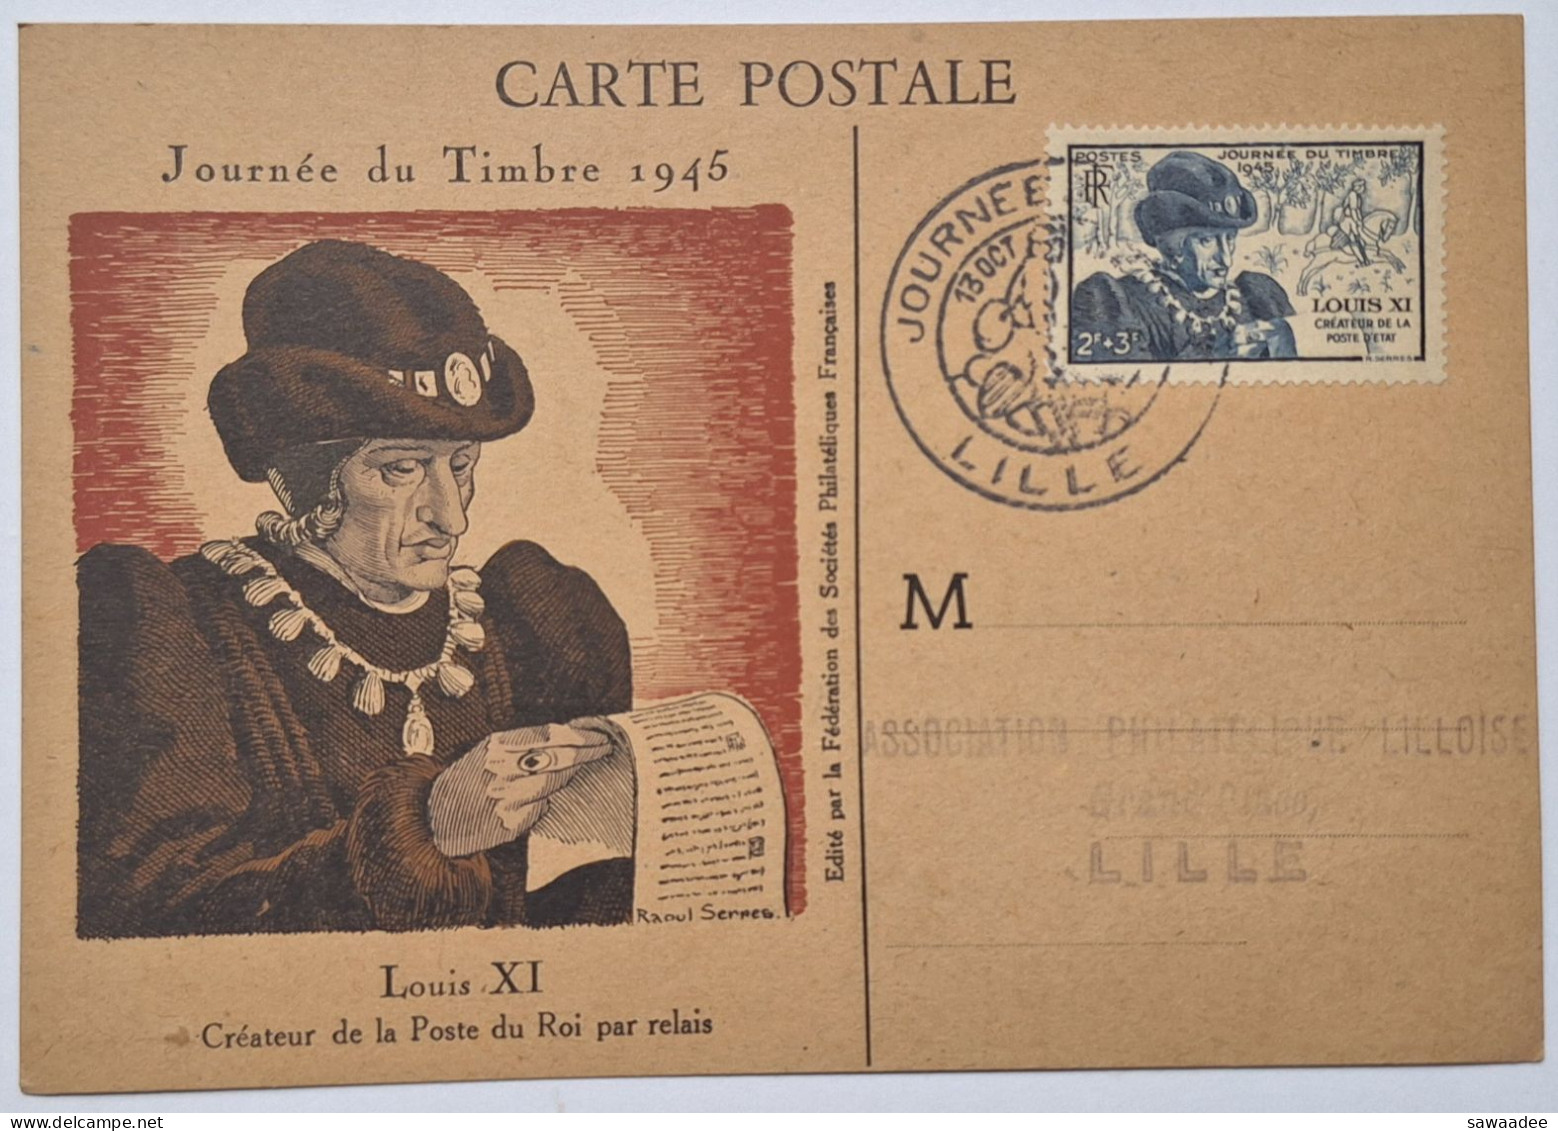 CARTE POSTALE FRANCE - JOURNEE DU TIMBRE 1946 LILLE - LOUIS XI CREATEUR DE LA POSTE DU ROI PAR RELAIS - Post